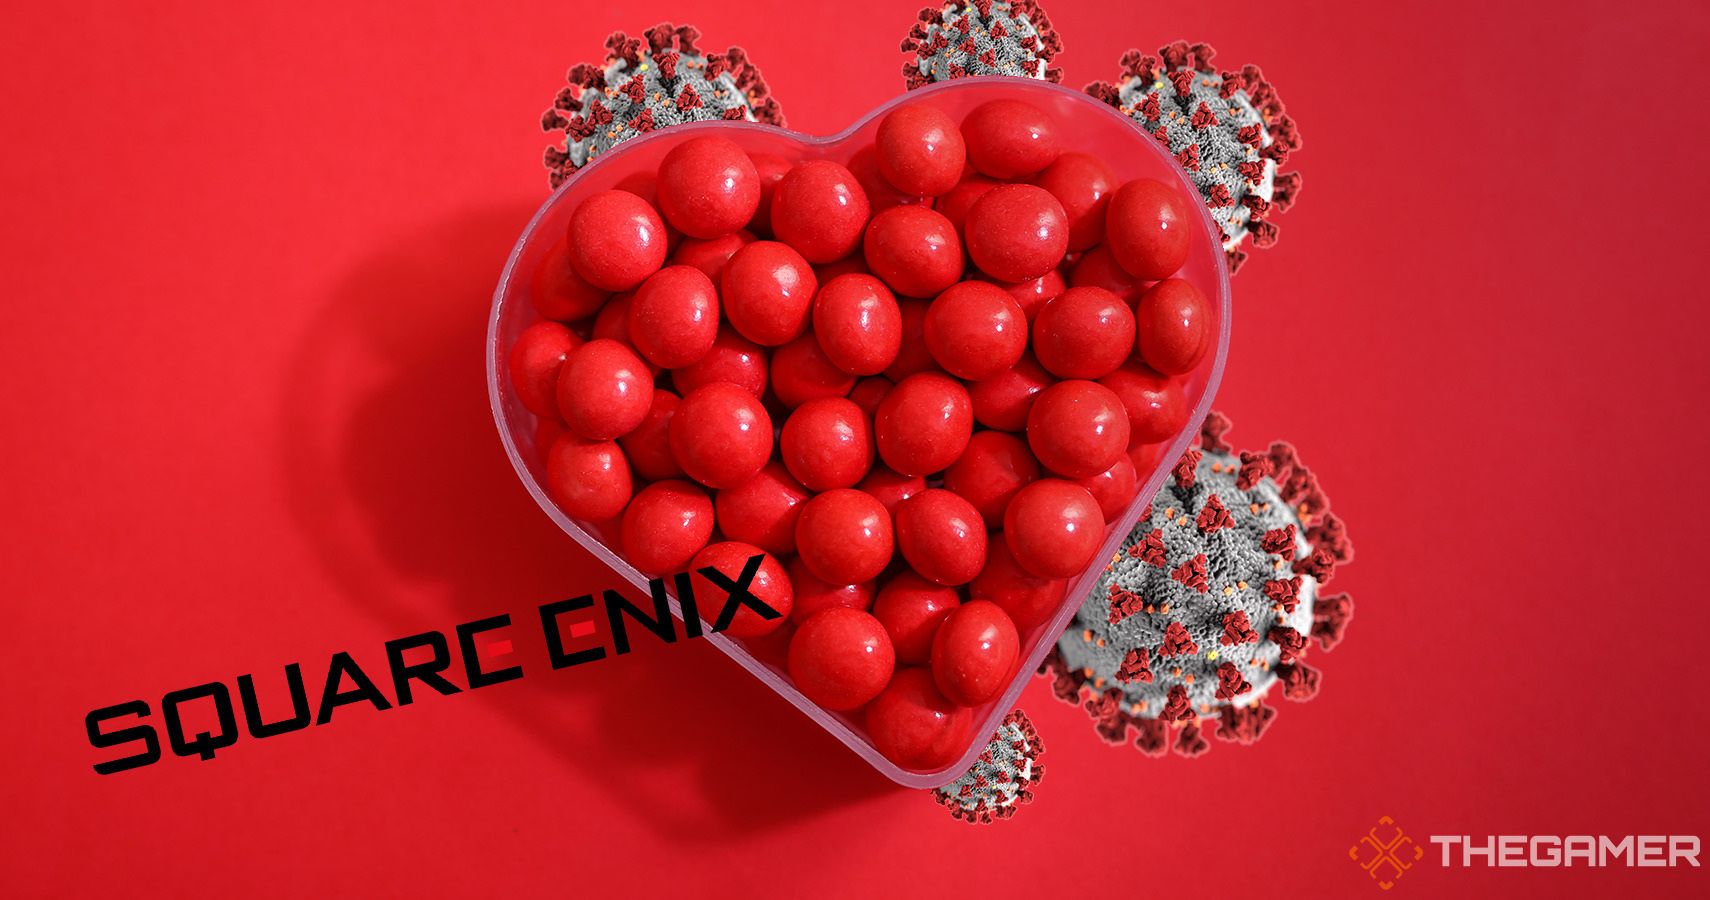 Square Enix - No Valentine's Chocolate Amidst Covid-19